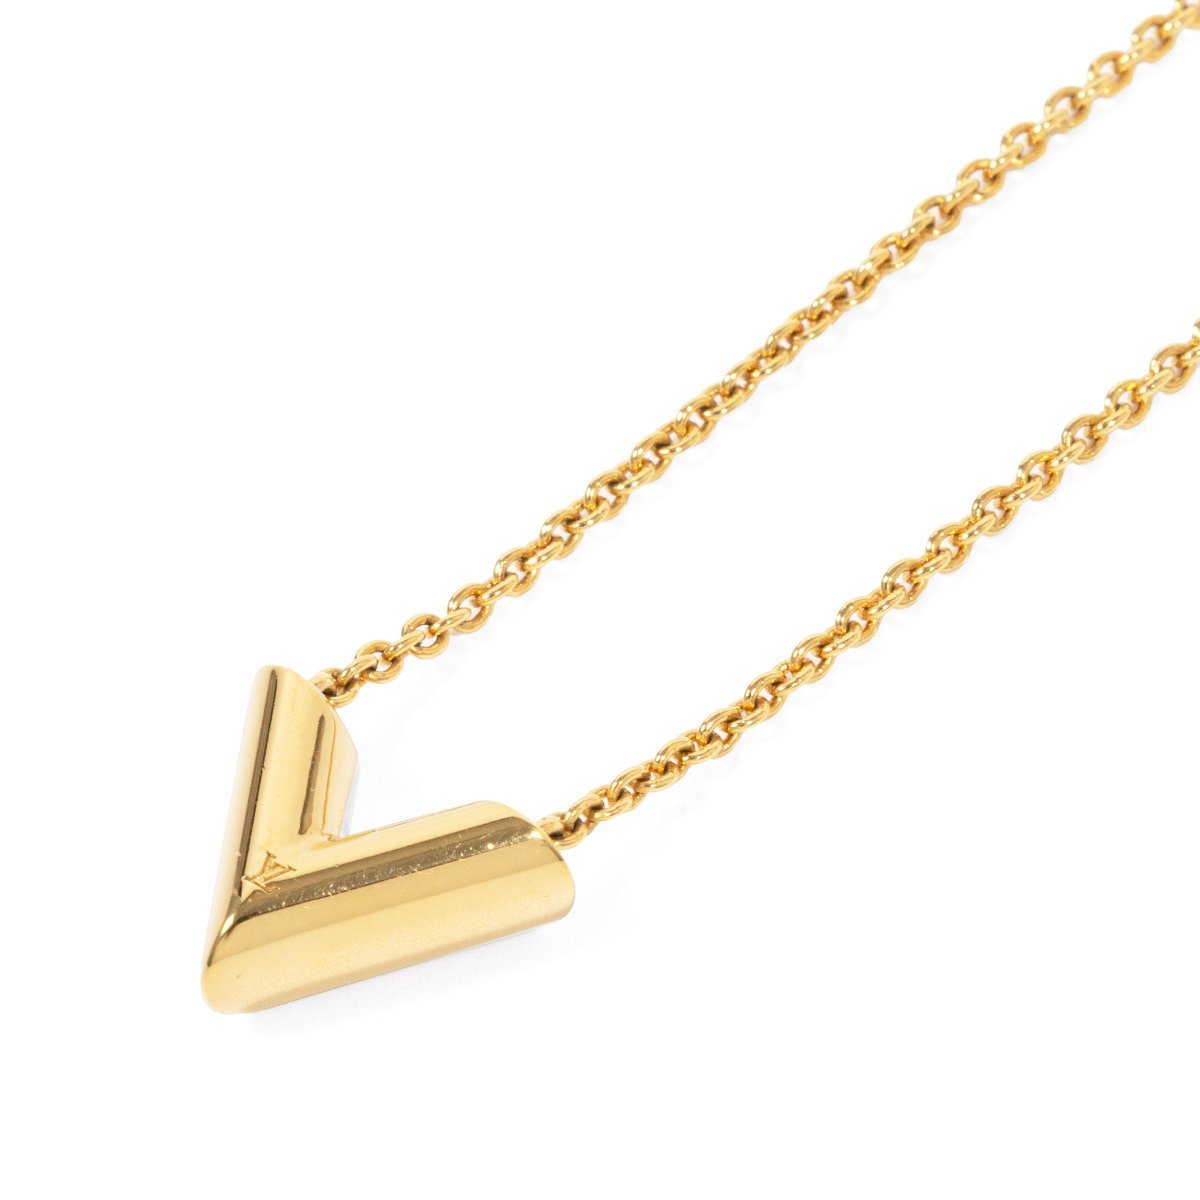 Louis Vuitton Louis Vuitton Necklace Essential V Pendant Gp Gold